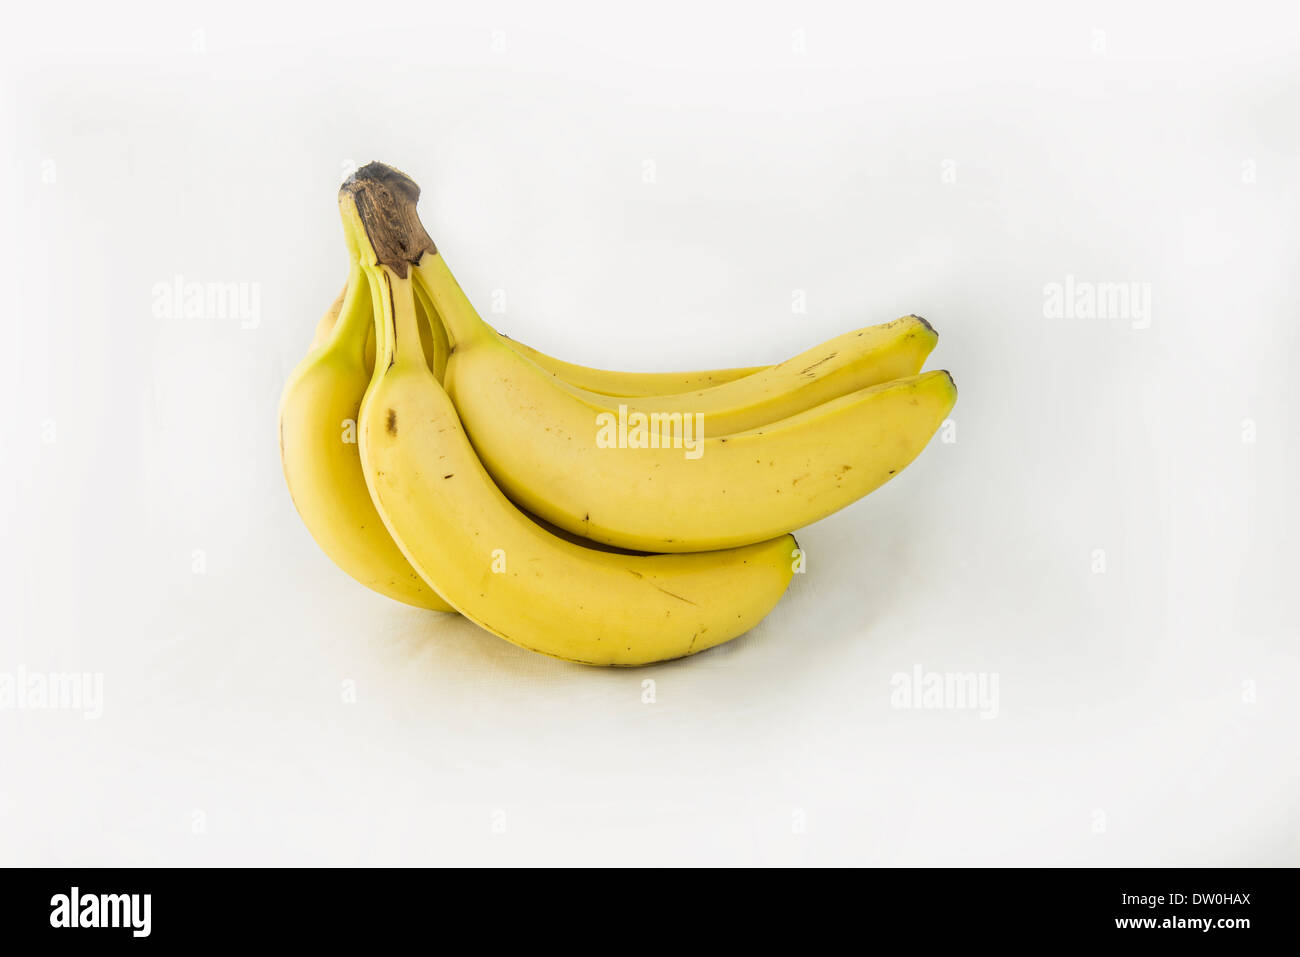 Ein Bündel von Reifen ganze Bananen auf einem weißen Hintergrund. Ausschnitt, ausgeschnitten. Stockfoto